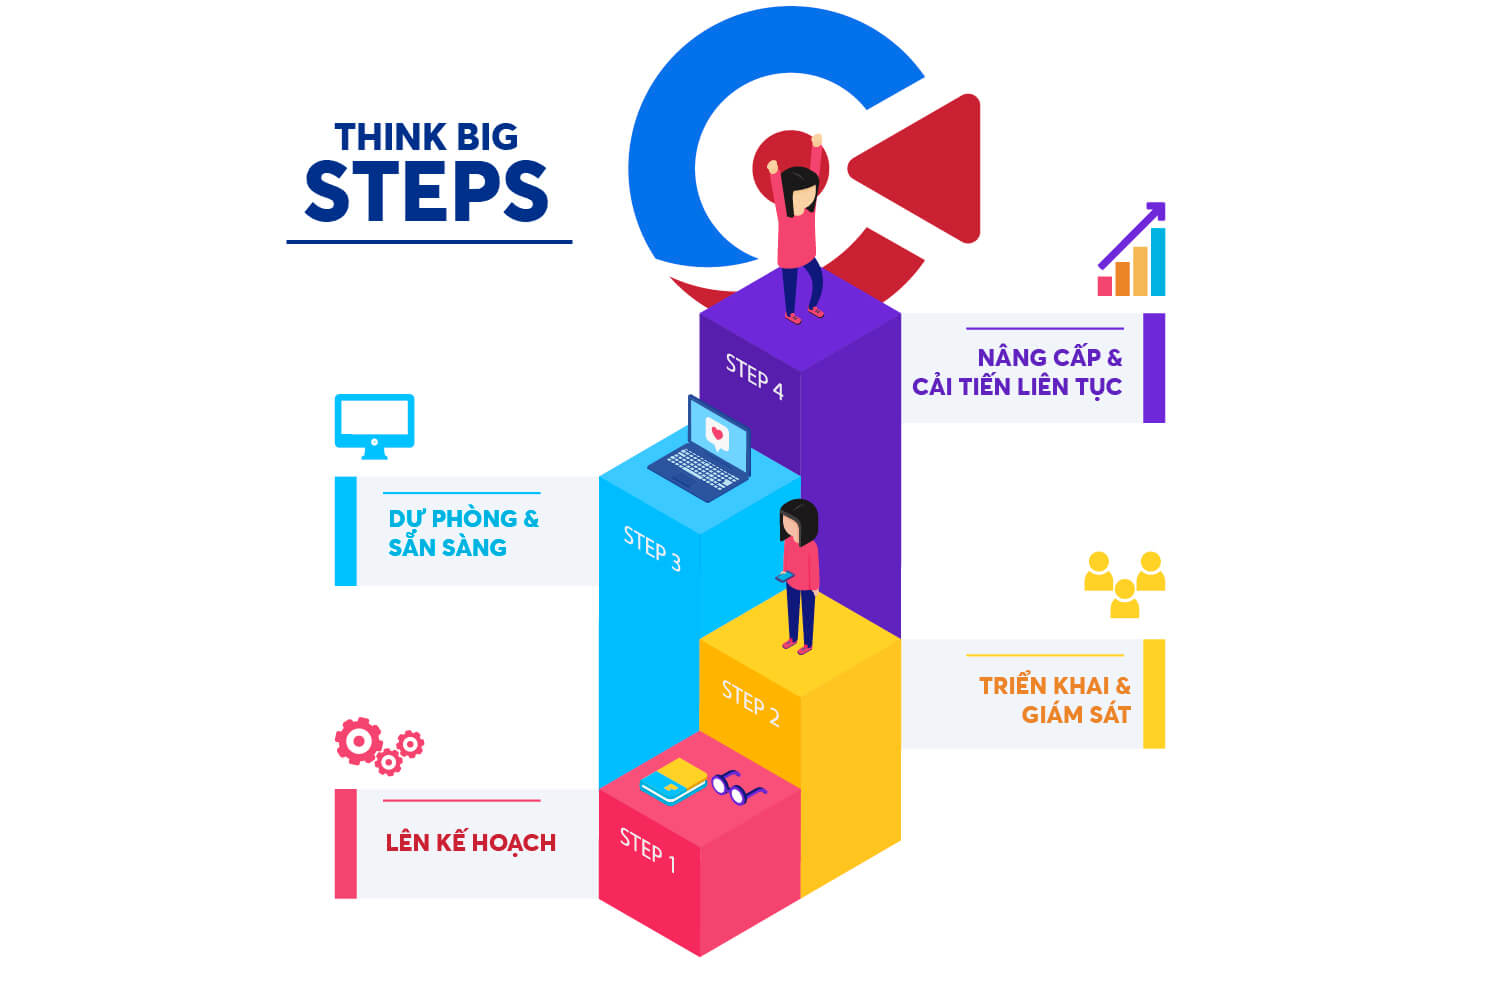 Các bước "think big" trong chuyển đổi số